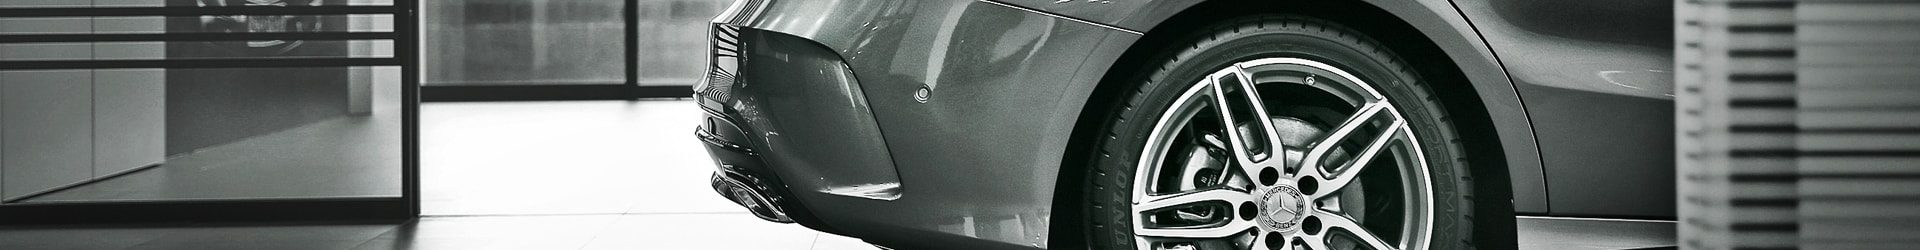 –雙重5力– 小改款 Audi A5 & S5 Sportback 同場拍攝開箱